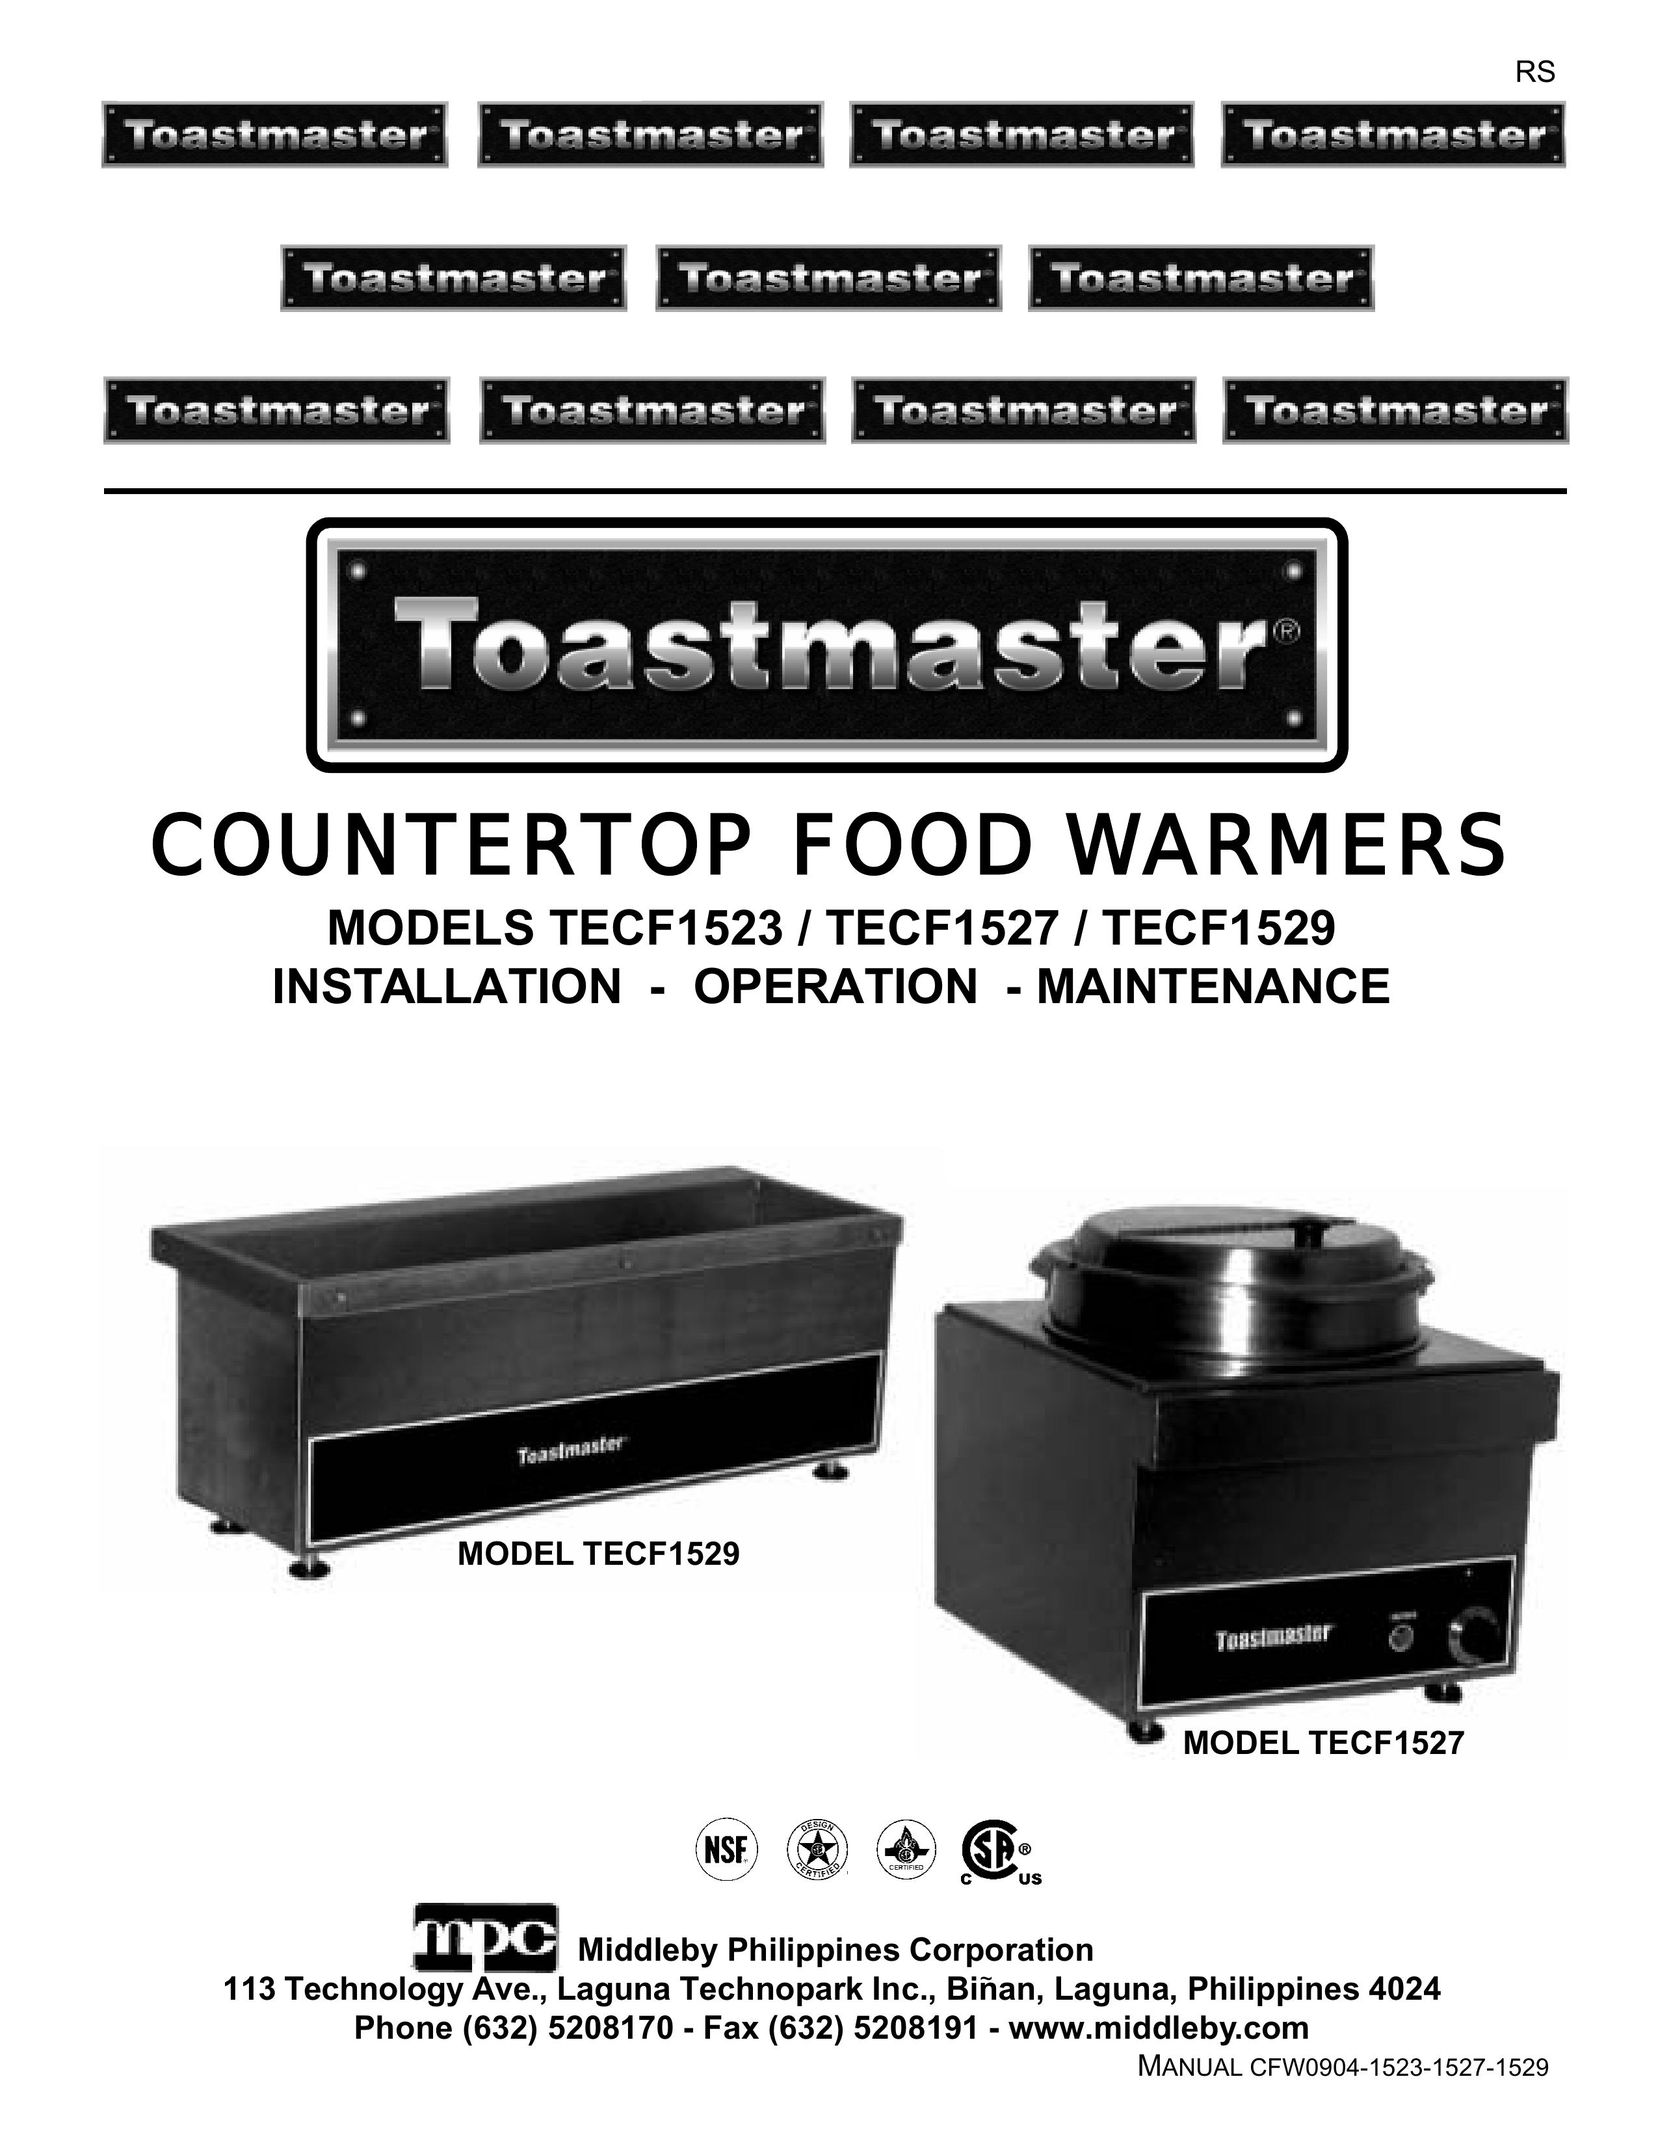 Toastmaster TECF1523 Food Warmer User Manual